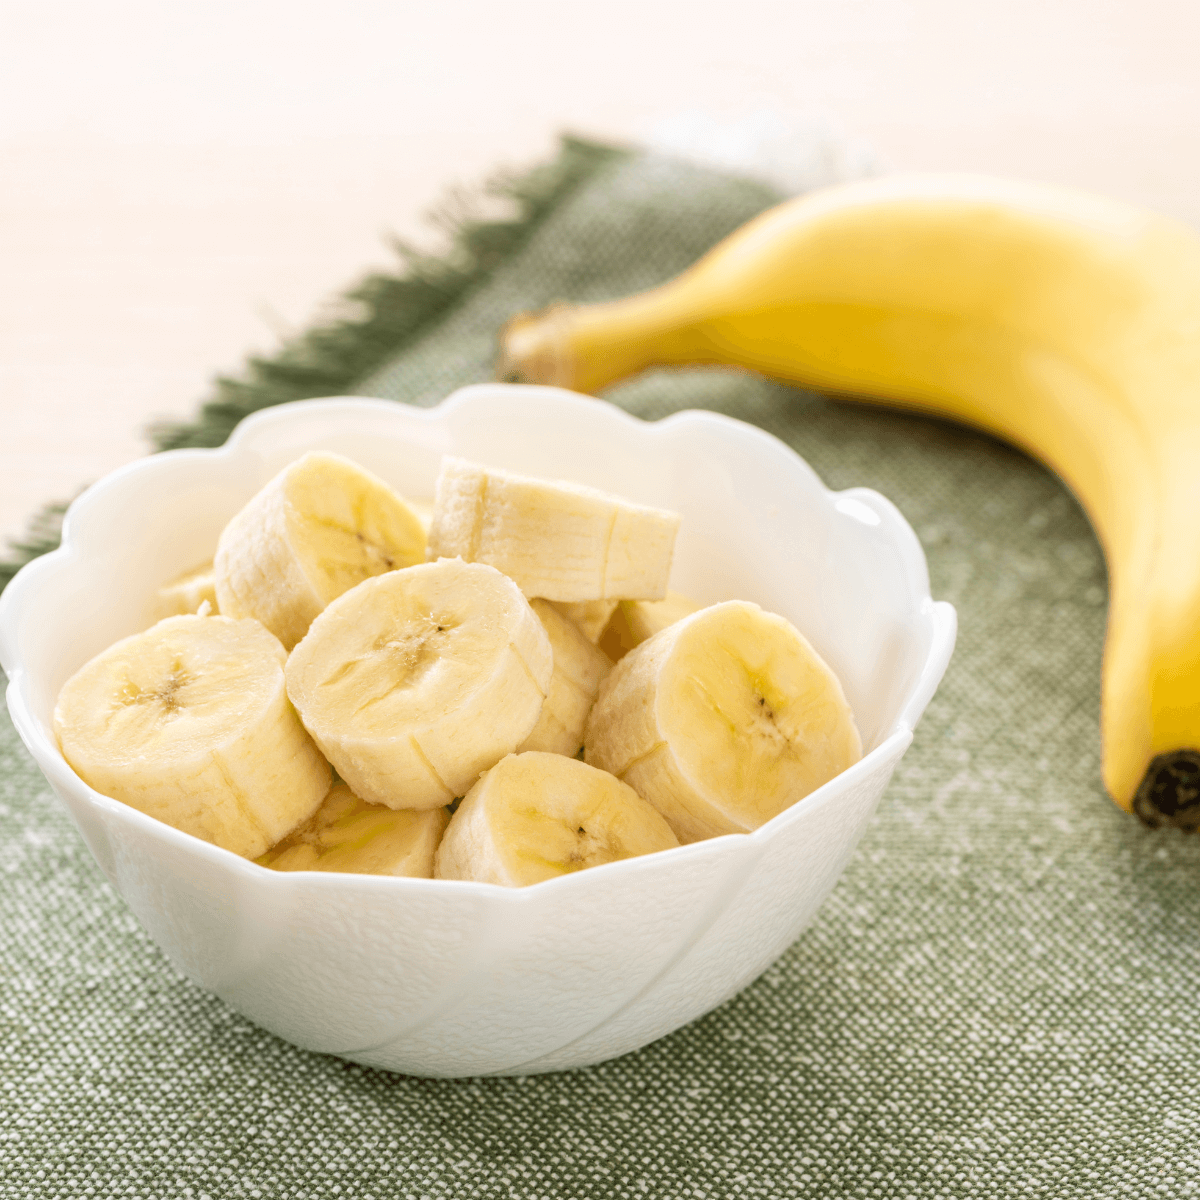 Z Natural Foods Banana Flakes - Organic - 5 lbs